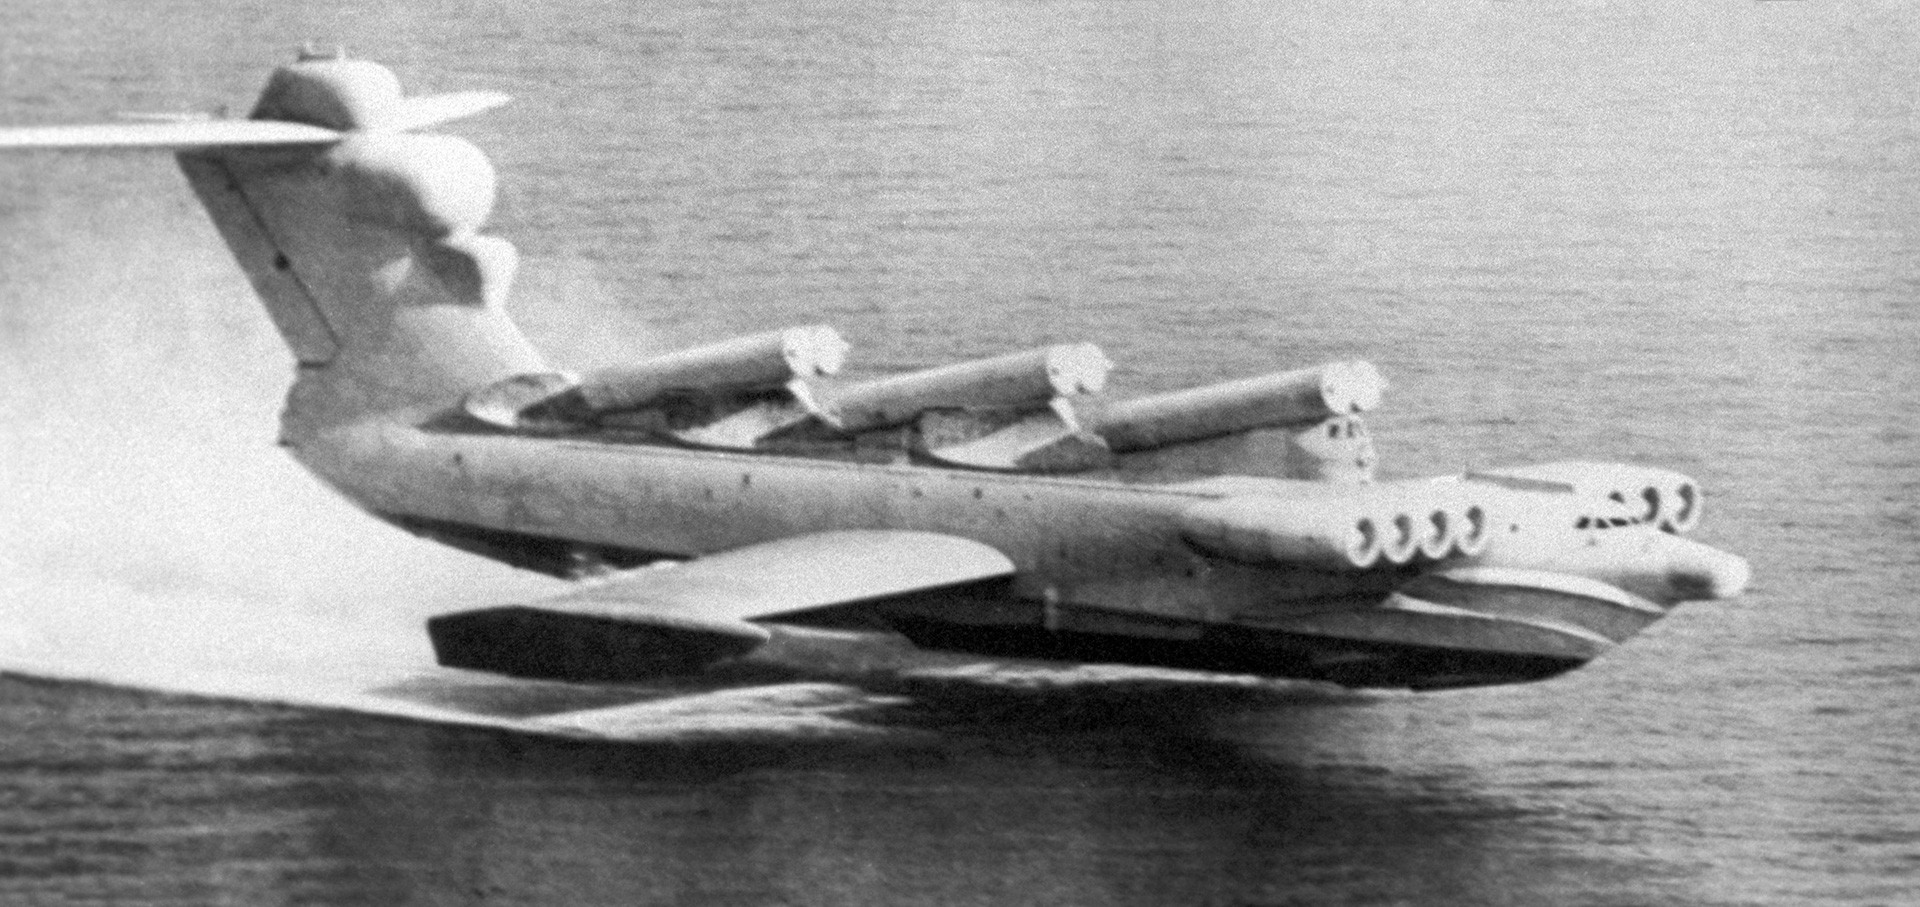 Совјетски екраноплан „Луњ„“ је  био наоружан противбродским крстарећим ракетама П-270 „Москит“, тако да је представљао опасност по носаче авиона.